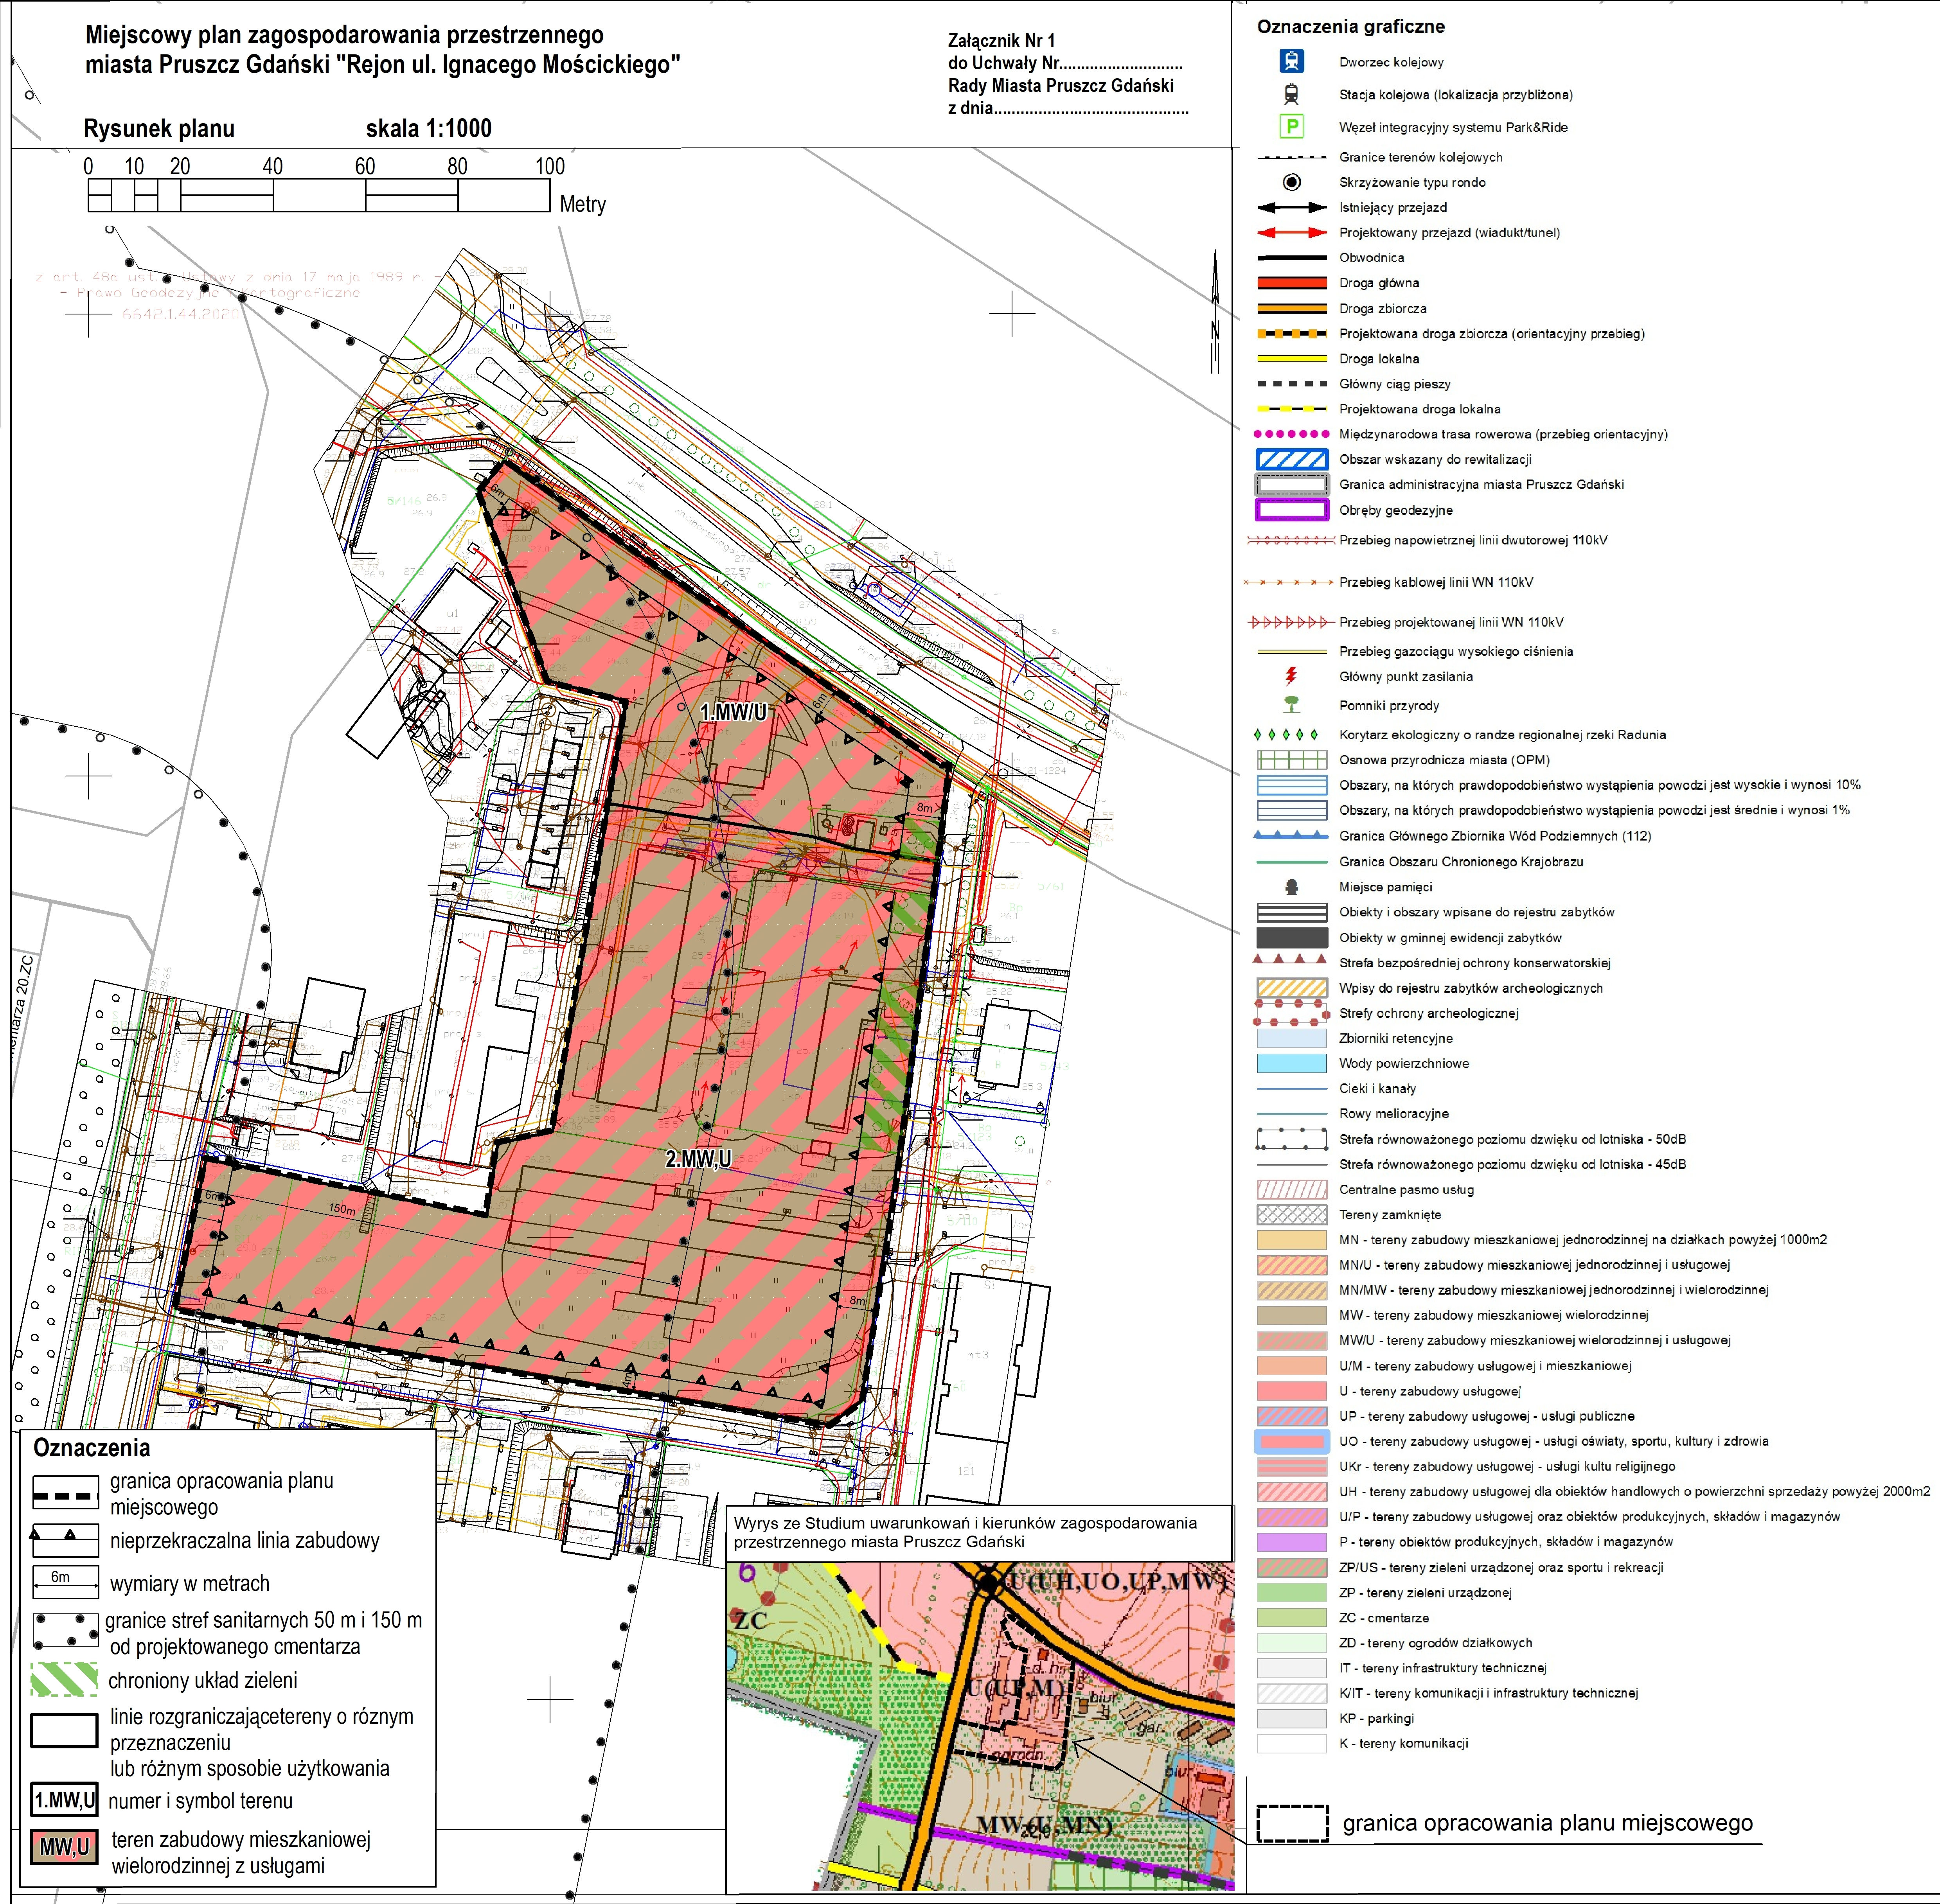 Rysunek planu zagospodarowania przestrzennego miasta Pruszcz Gdański "Rejon ulicy Ignacego Mościckiego